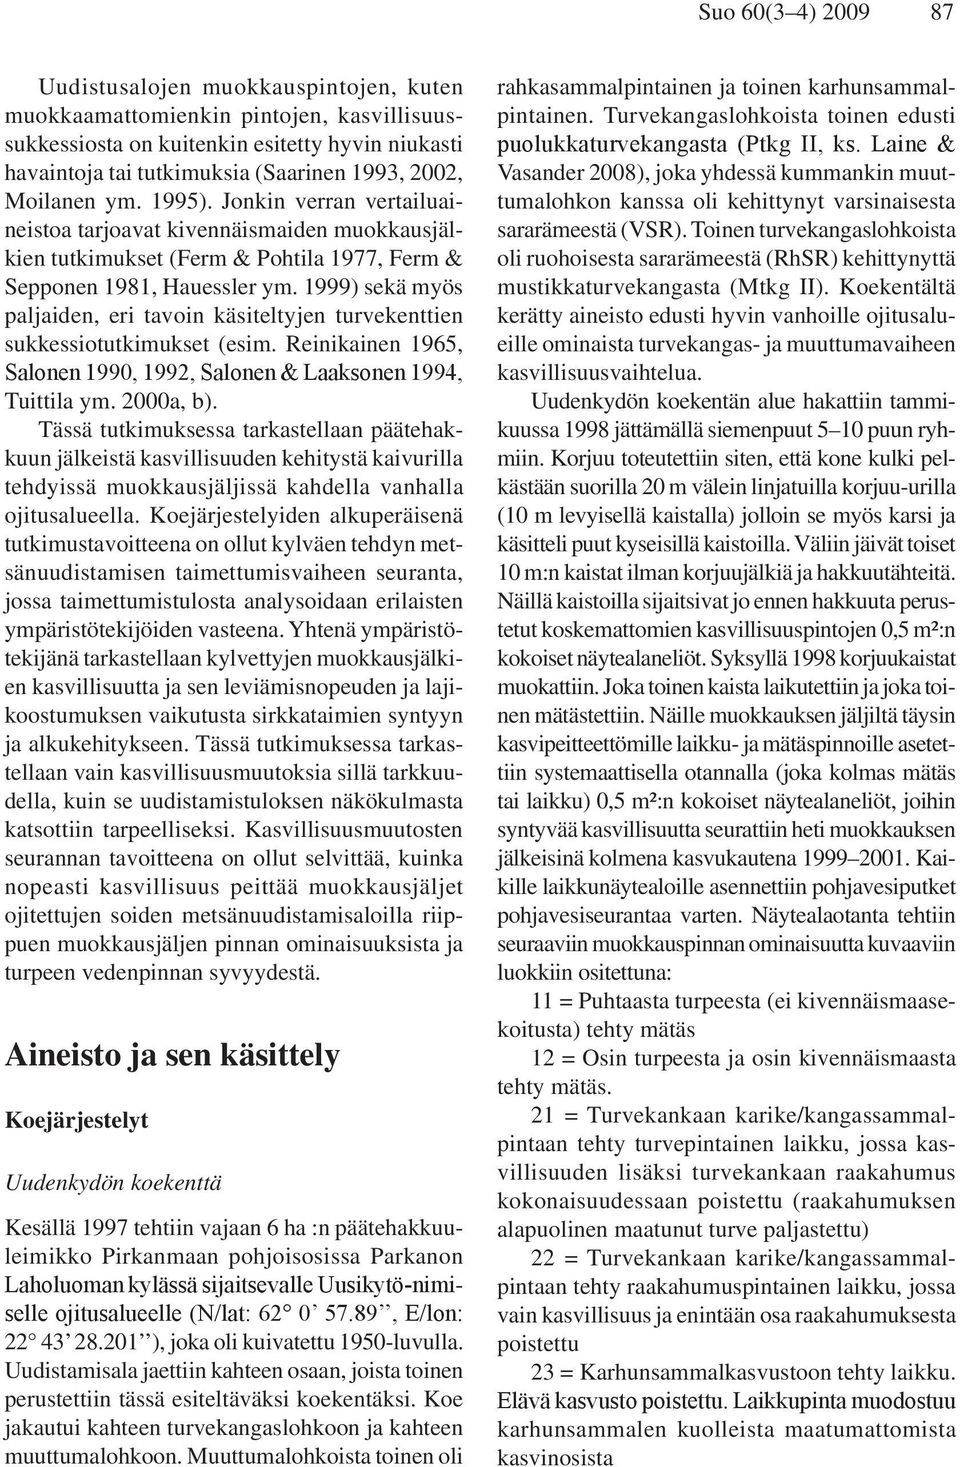 1999) sekä myös paljaiden, eri tavoin käsiteltyjen turvekenttien sukkessiotutkimukset (esim. Reinikainen 1965, Salonen 1990, 1992, Salonen & Laaksonen 1994, Tuittila ym. 2000a, b).